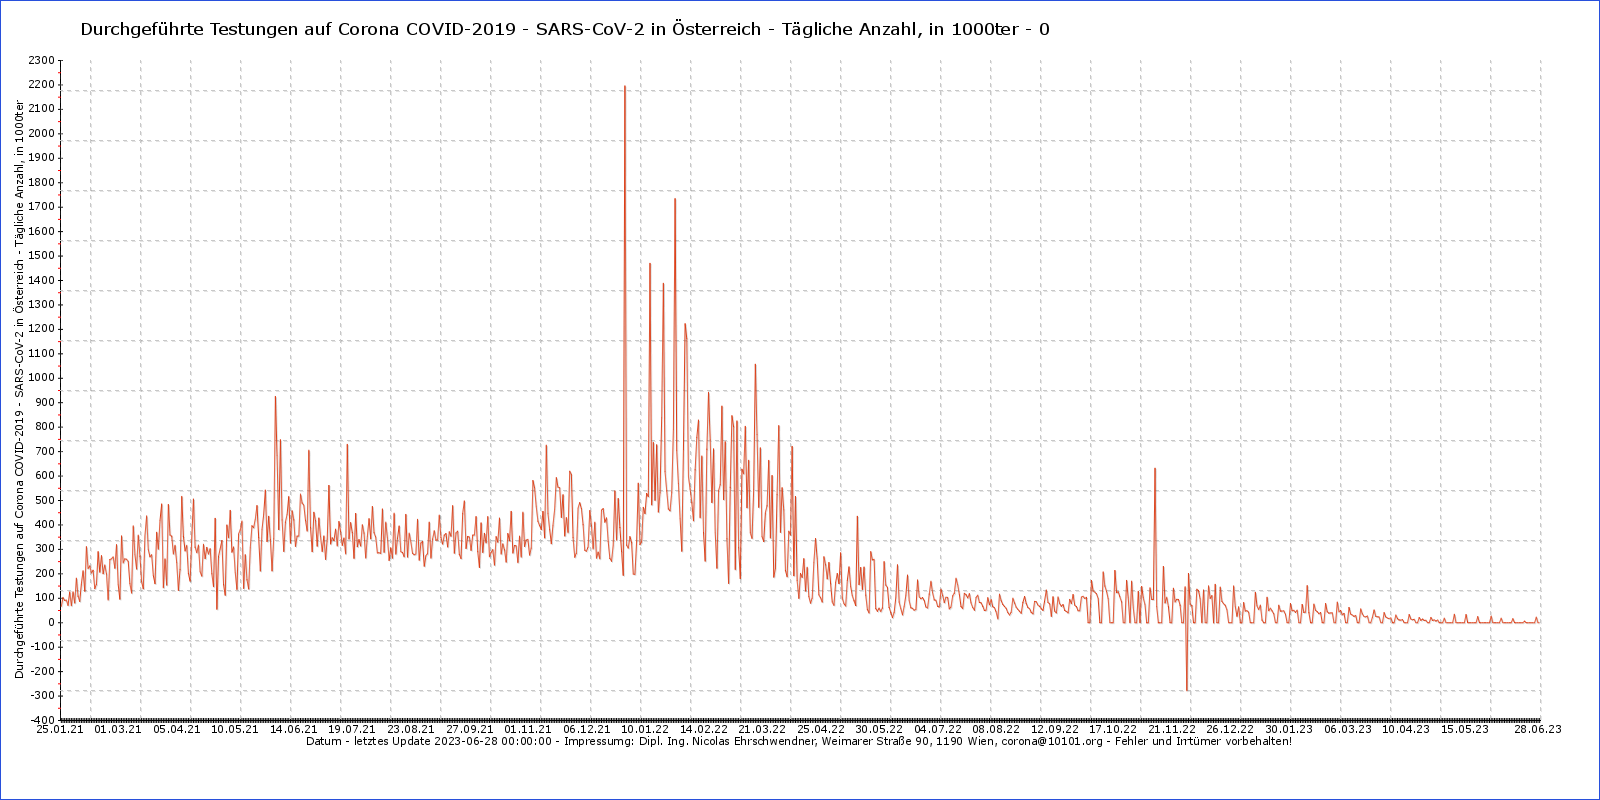 Durchgeführte Testungen auf Corona COVID-2019 - SARS-CoV-2 in Österreich - Tägliche Anzahl